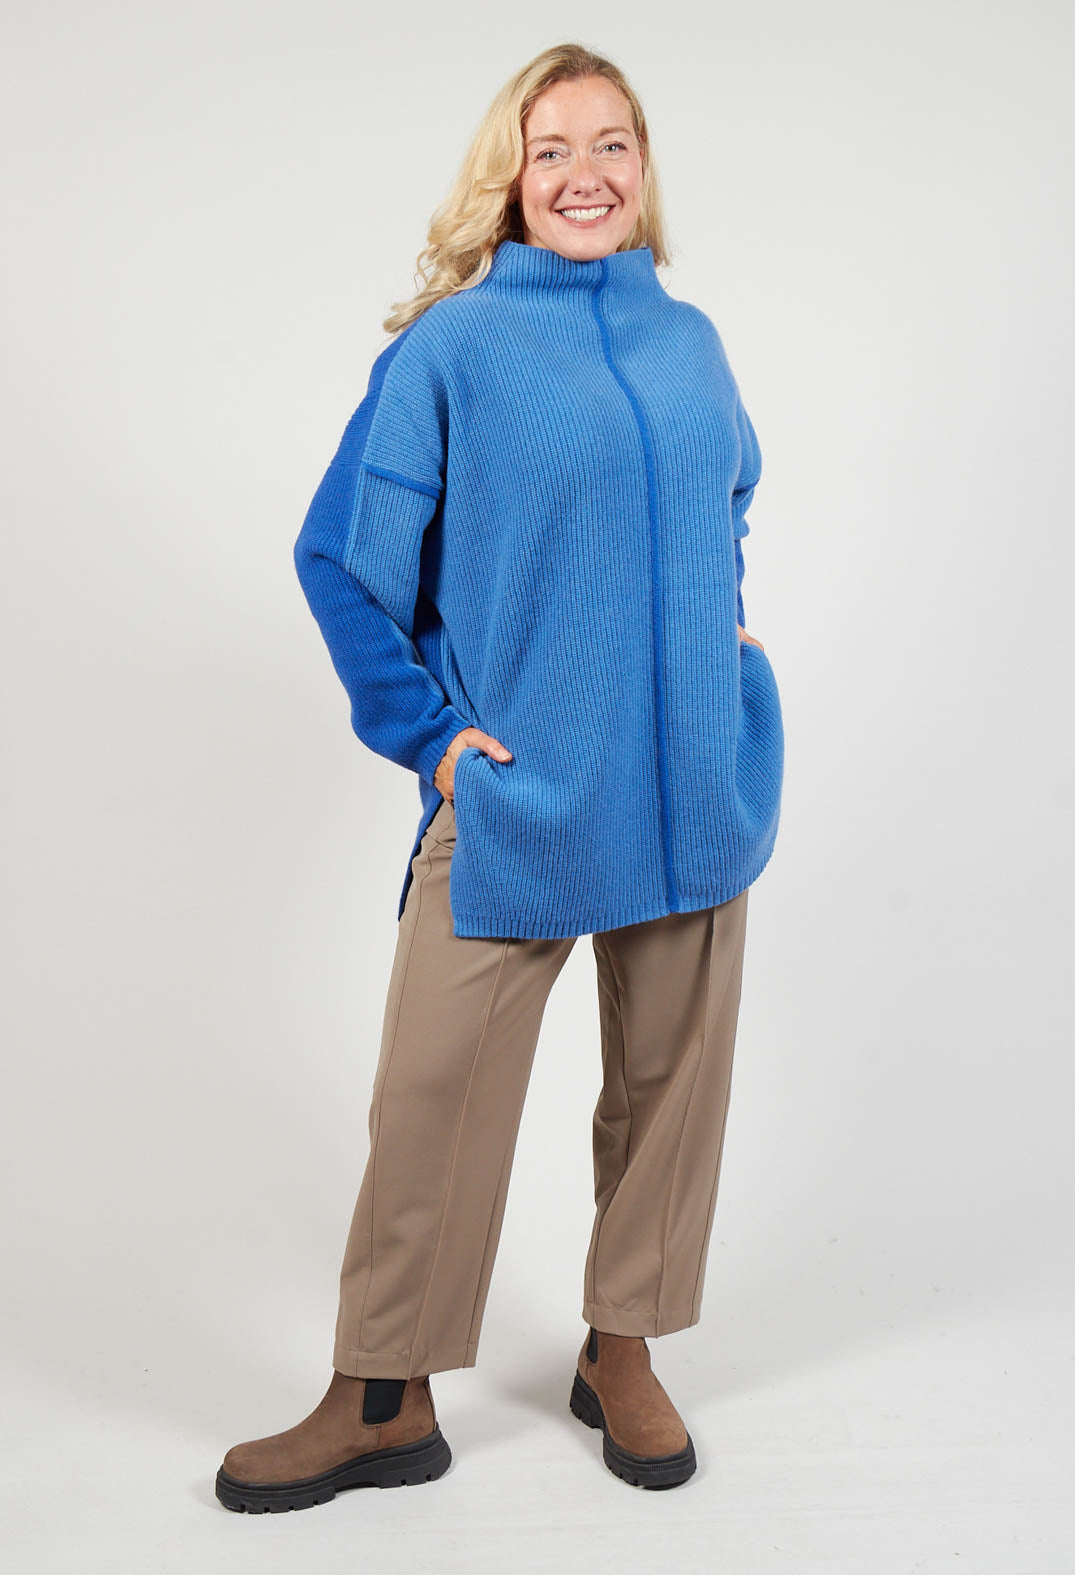 lady wearing a Topaz blue knit jumper